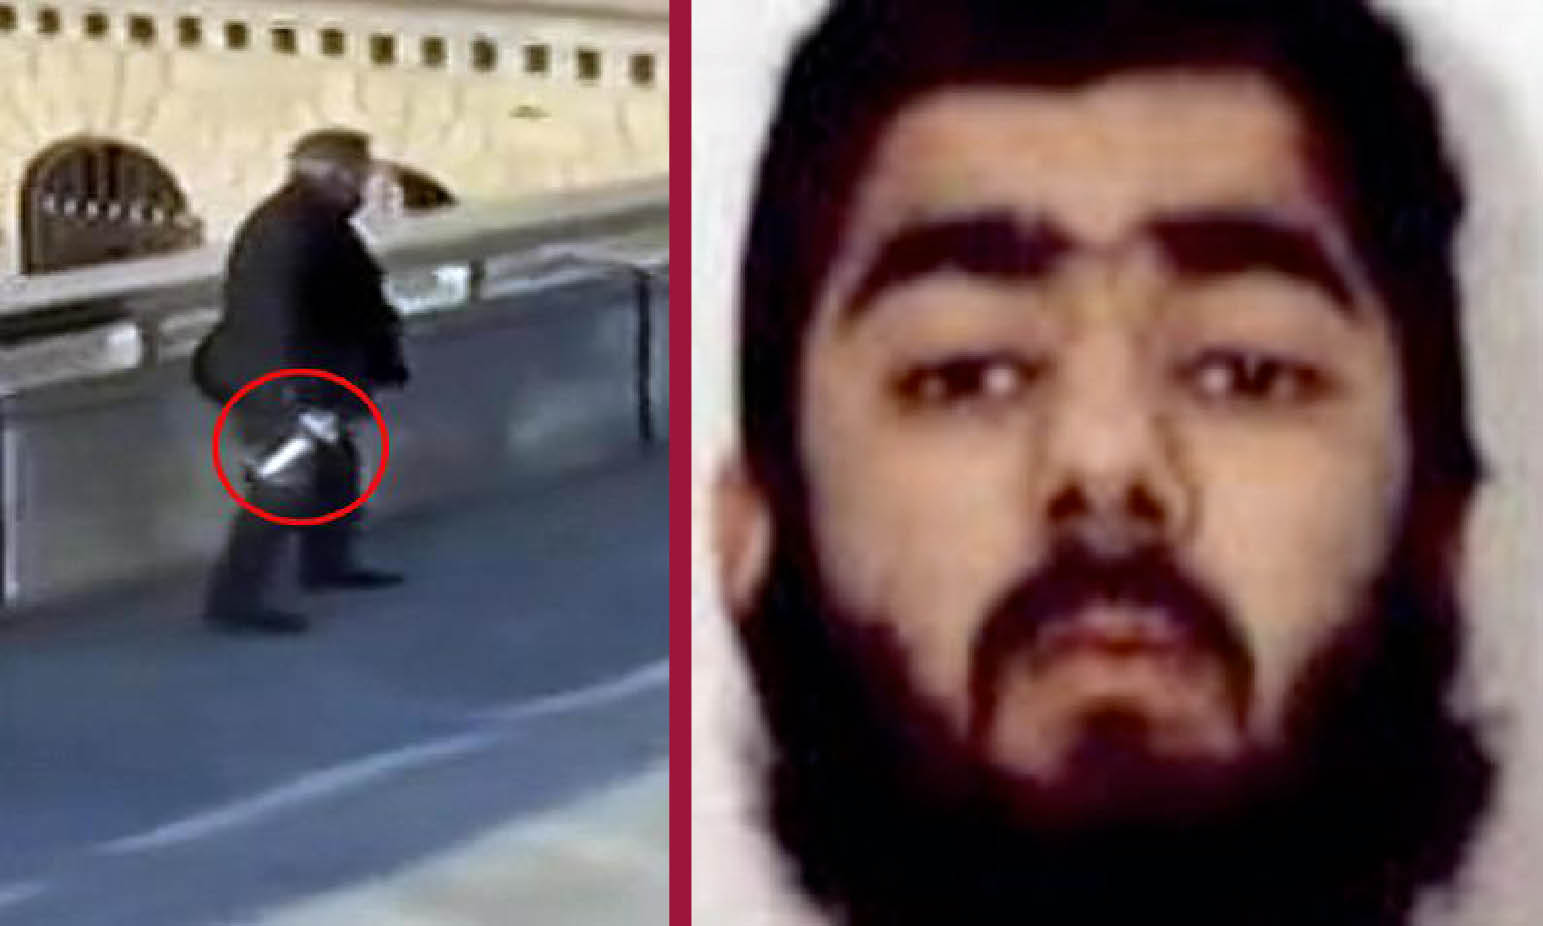 London Bridge killer convicted for jihadist terrorism in explosive plan against Stock Exchange. Lone wolves’ nightmare in Europe